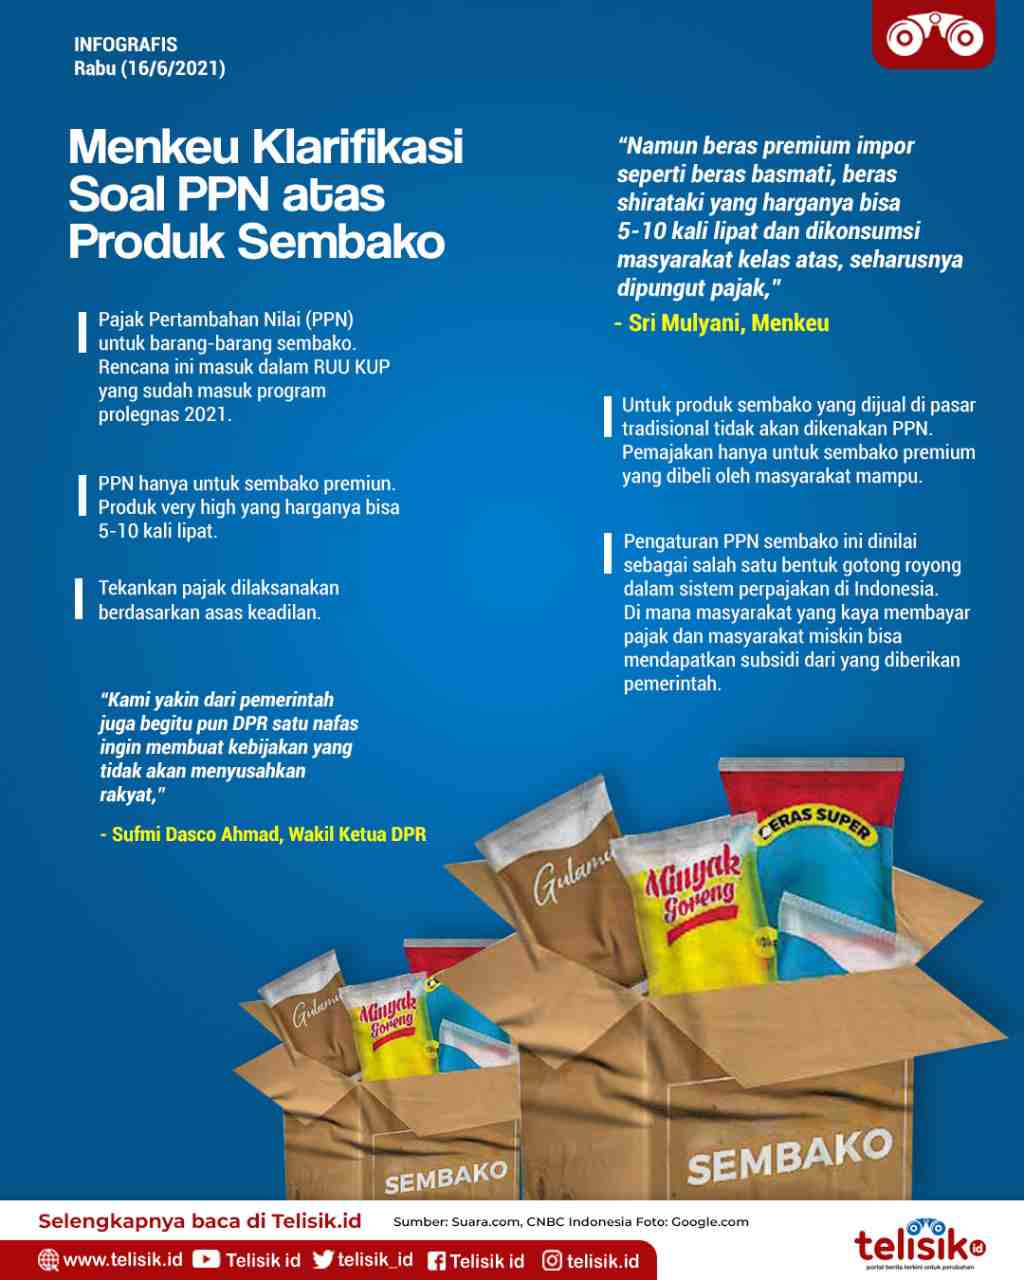 Infografis: Menkeu Klarifikasi Soal PPN atas Produk Sembako